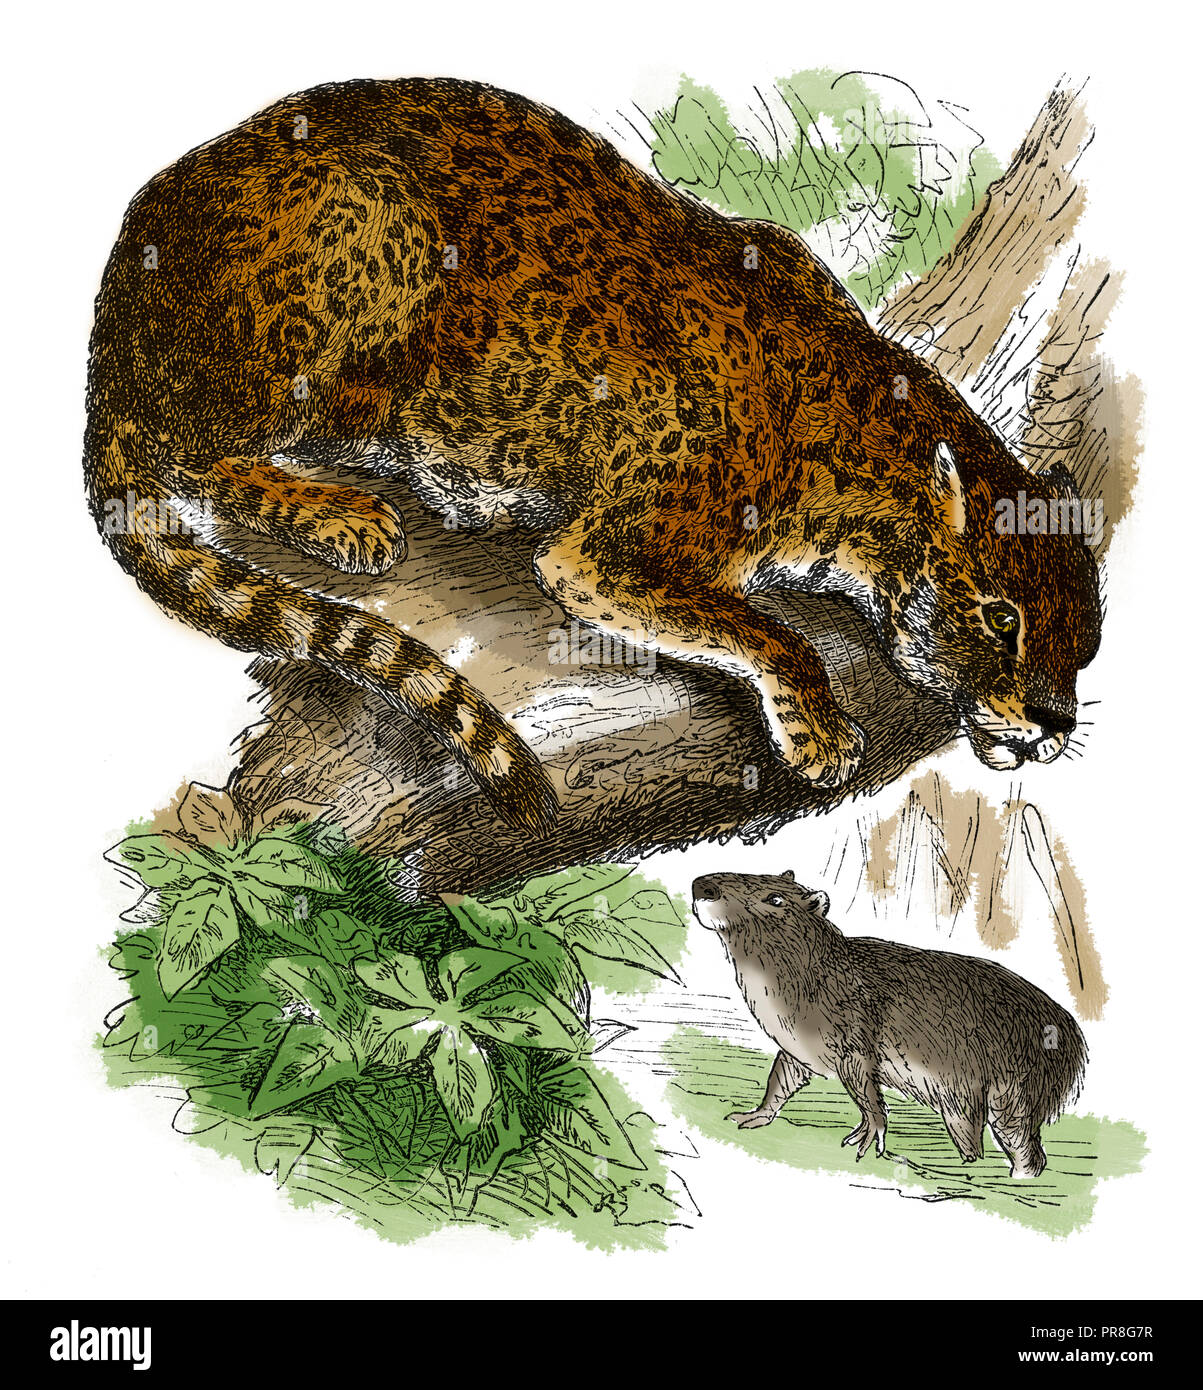 19th century illustration of jaguar. Published in Systematischer Bilder-Atlas zum Conversations-Lexikon, Ikonographische Encyklopaedie der Wissenschaf Stock Photo